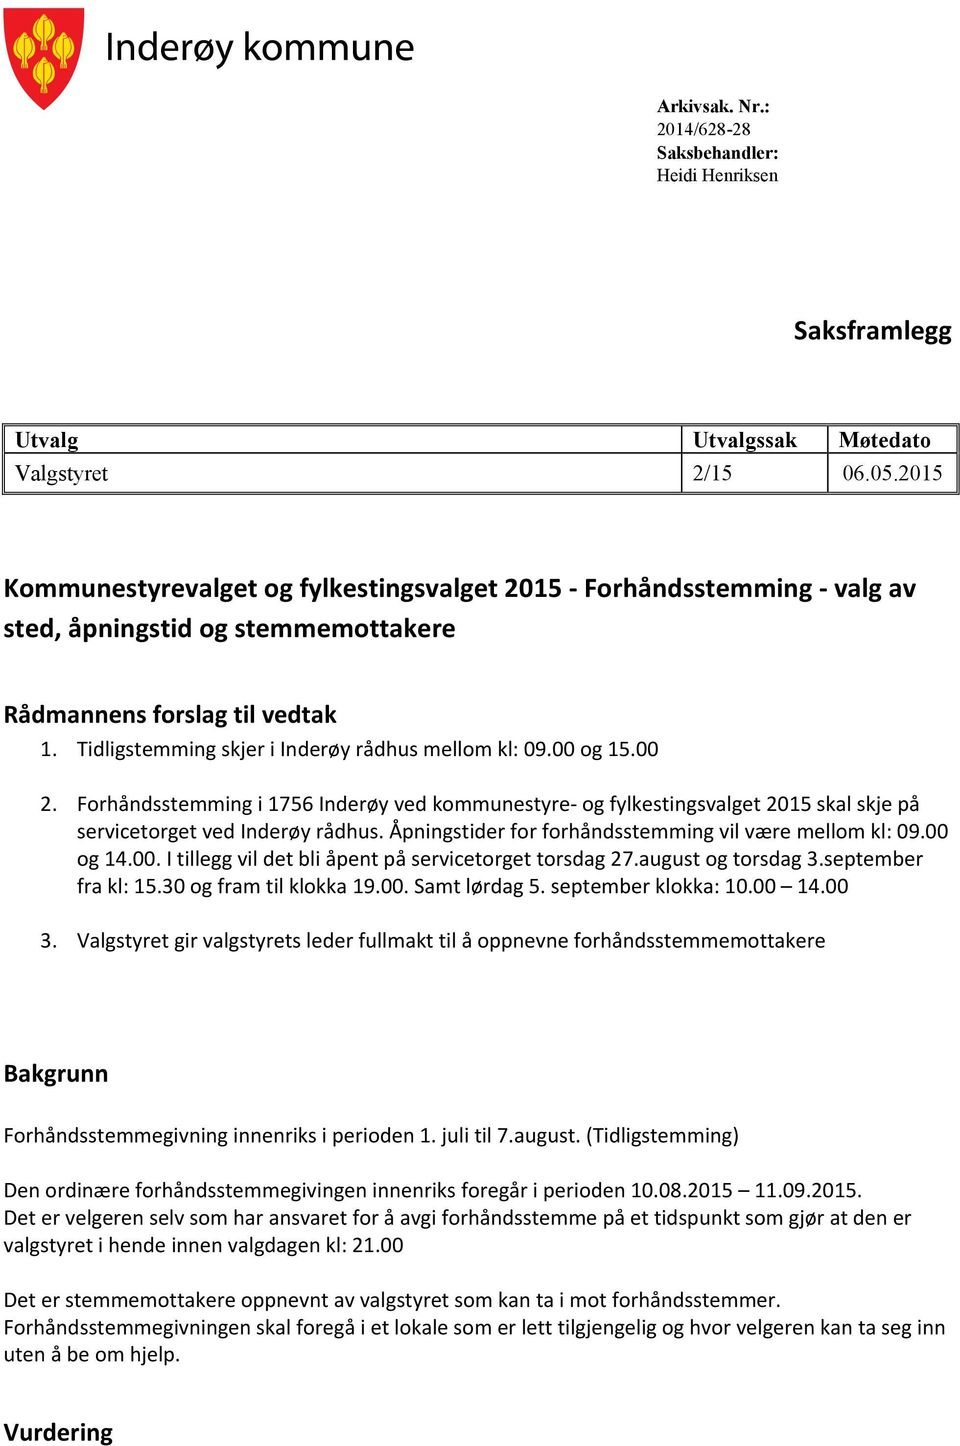 00 og 15.00 2. Forhåndsstemming i 1756 Inderøy ved kommunestyre- og fylkestingsvalget 2015 skal skje på servicetorget ved Inderøy rådhus. Åpningstider for forhåndsstemming vil være mellom kl: 09.